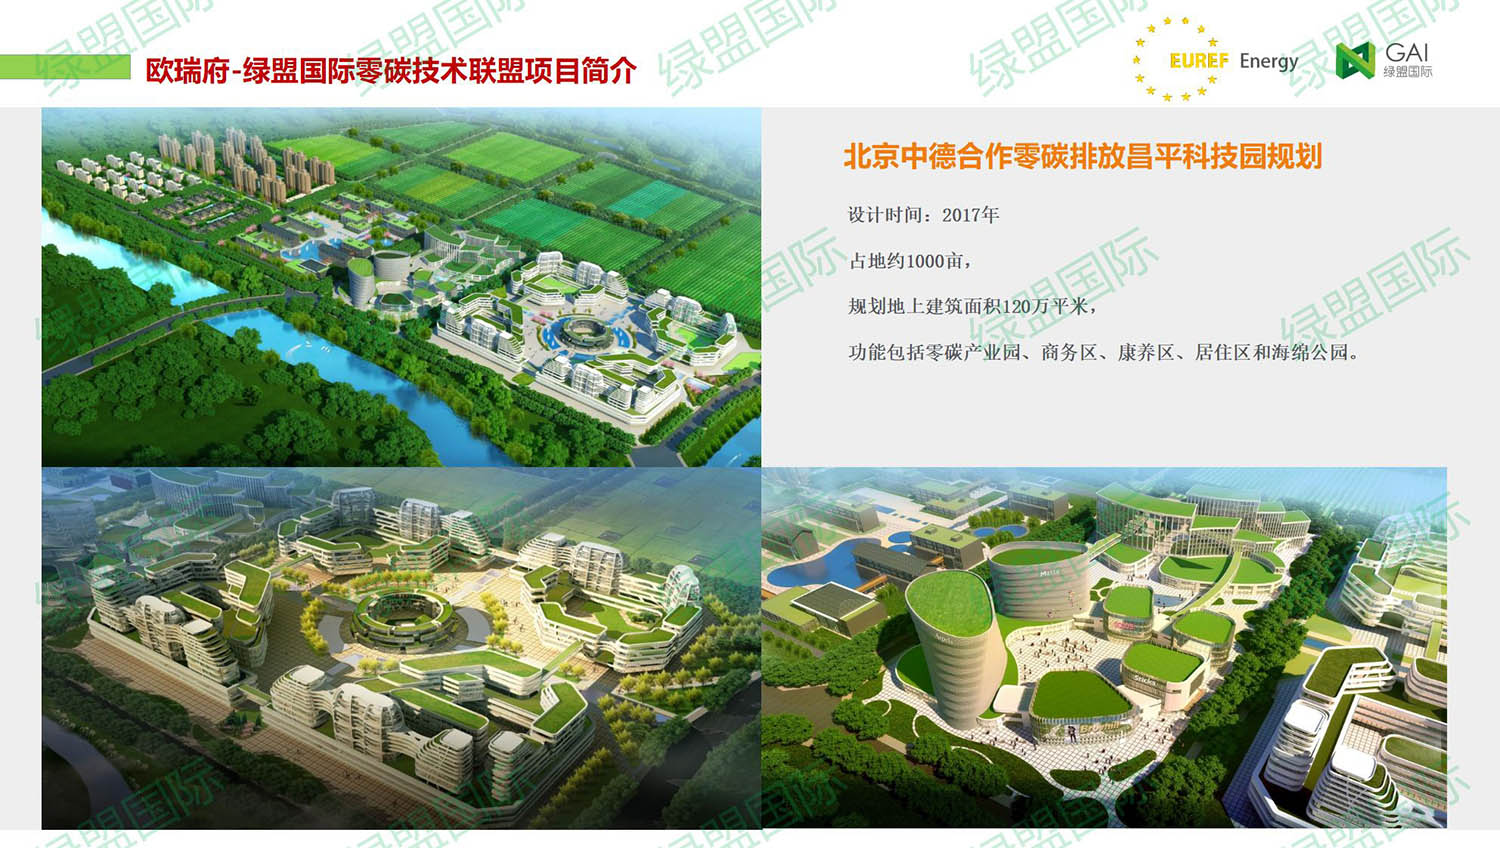 北京中德合作零碳排放昌平科技园规划